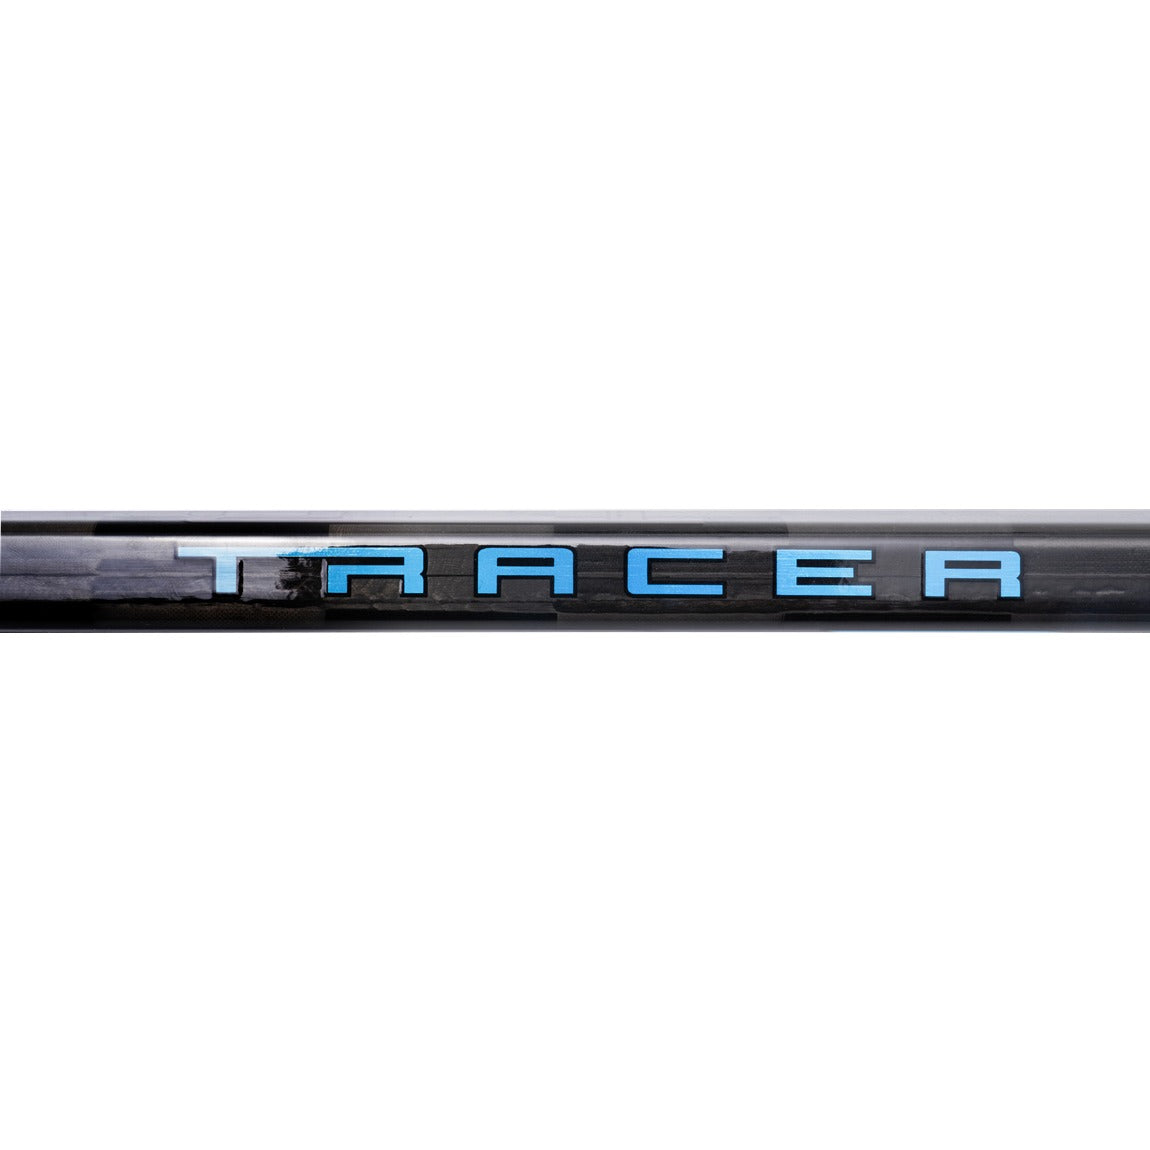 Bauer Nexus Tracer Hockey Stick - Senior